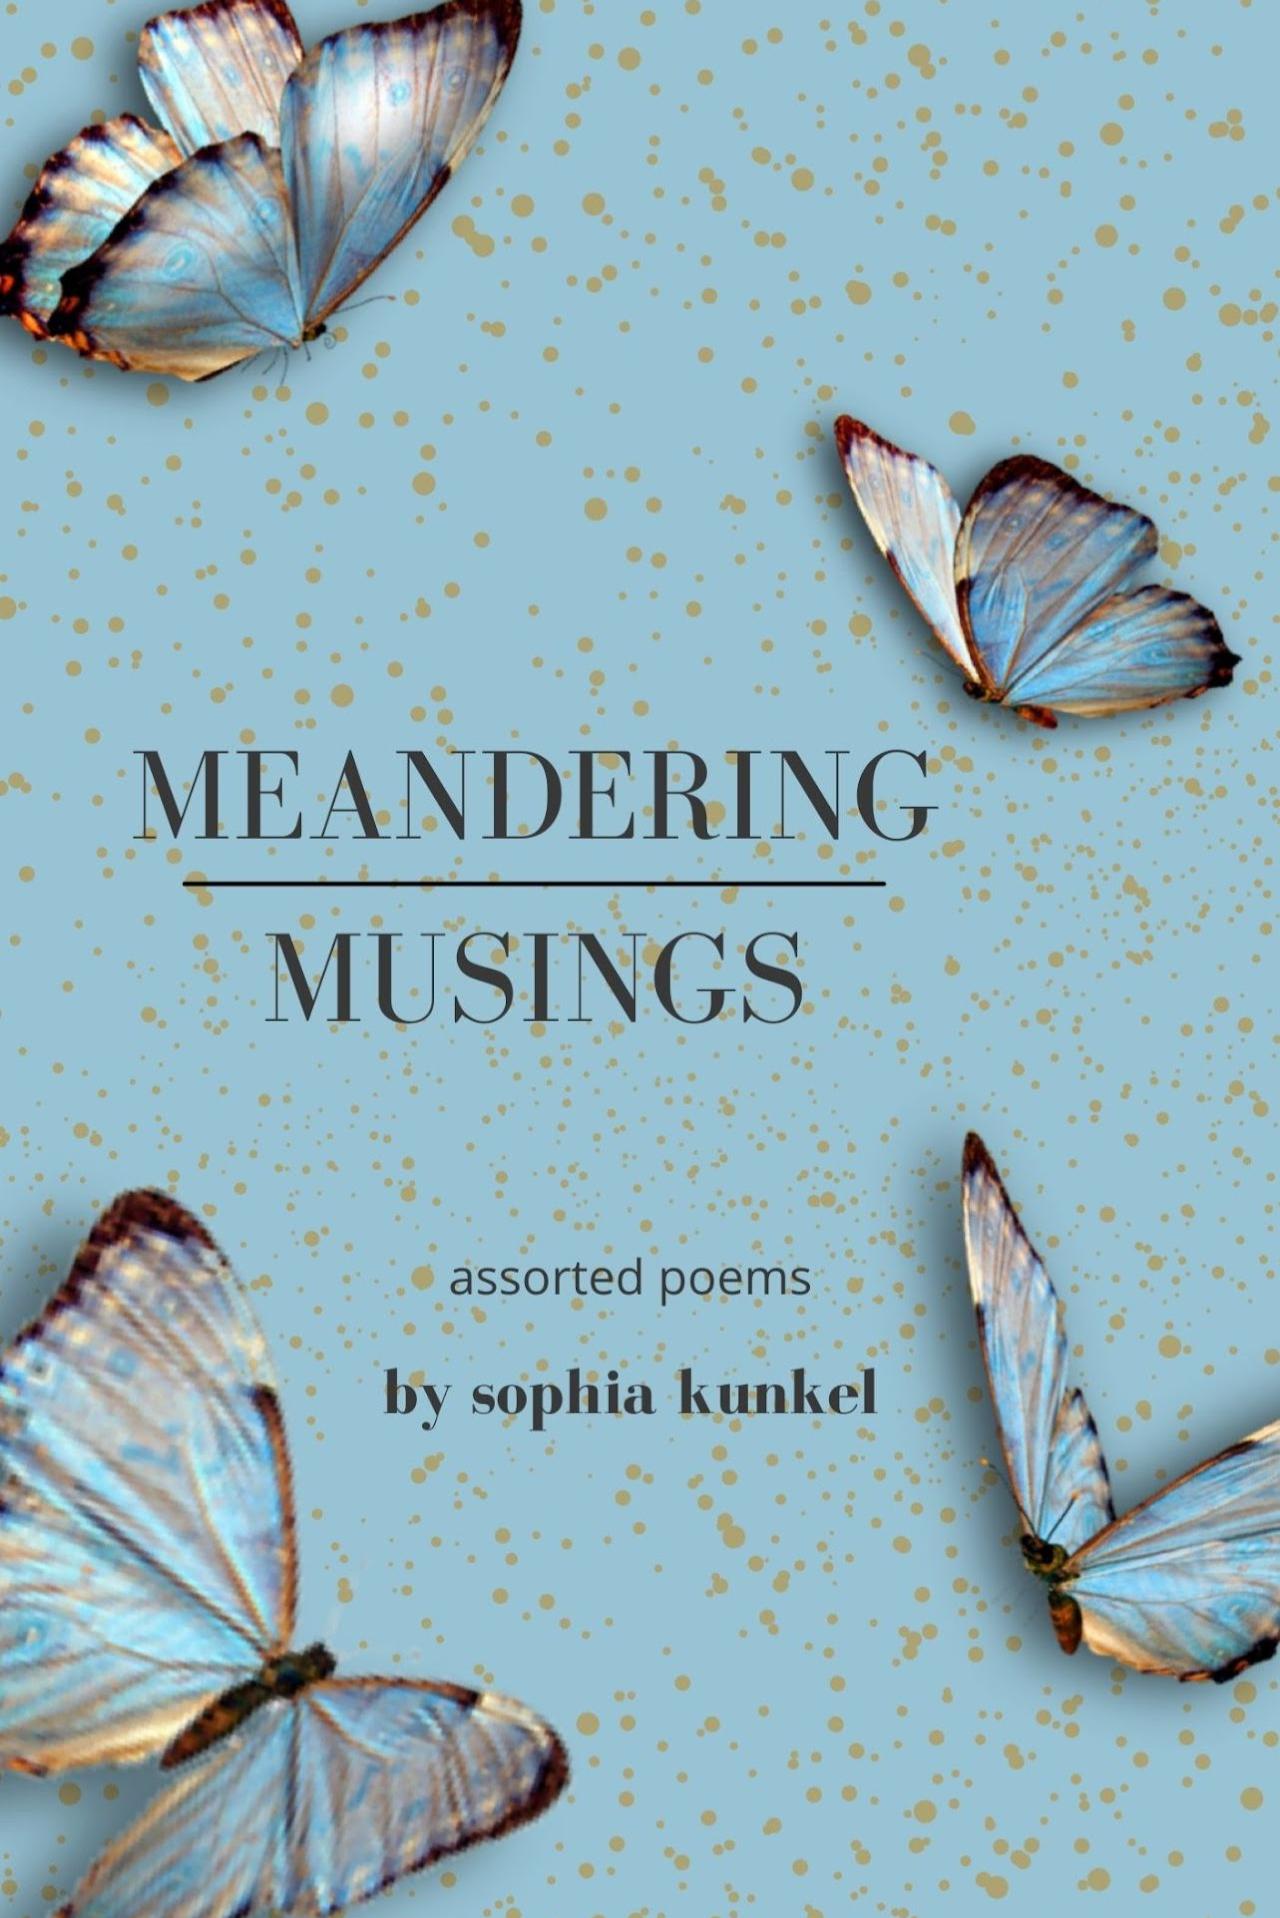 Book cover of Meandering Musings by Sophia Kunkel